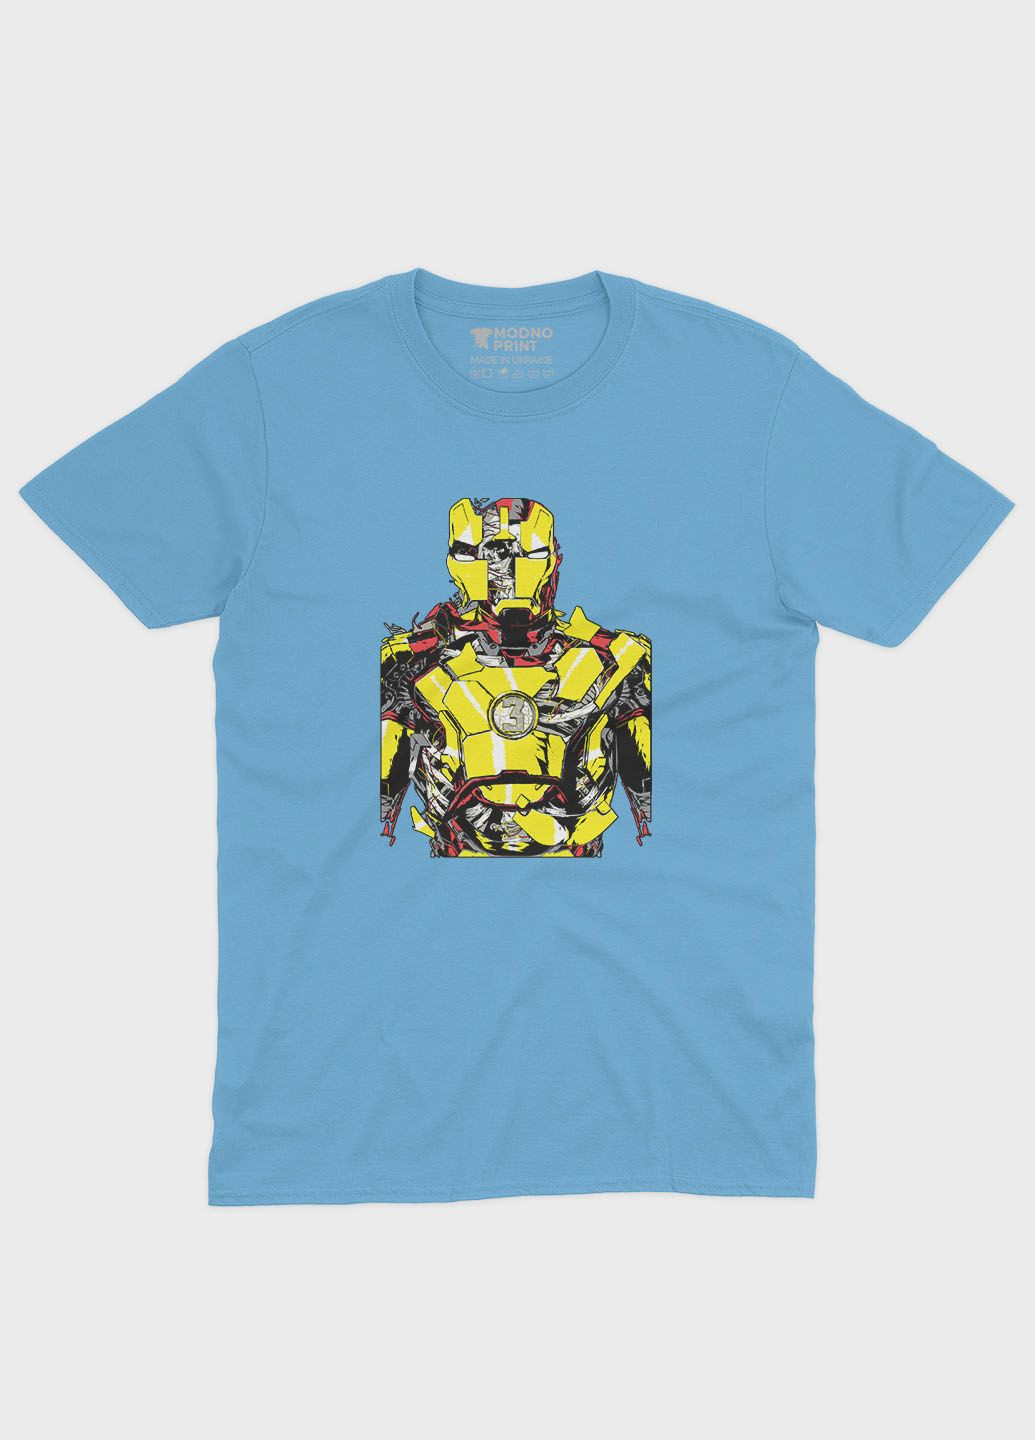 Голубая демисезонная футболка для девочки с принтом супергероя - железный человек (ts001-1-lbl-006-016-011-g) Modno